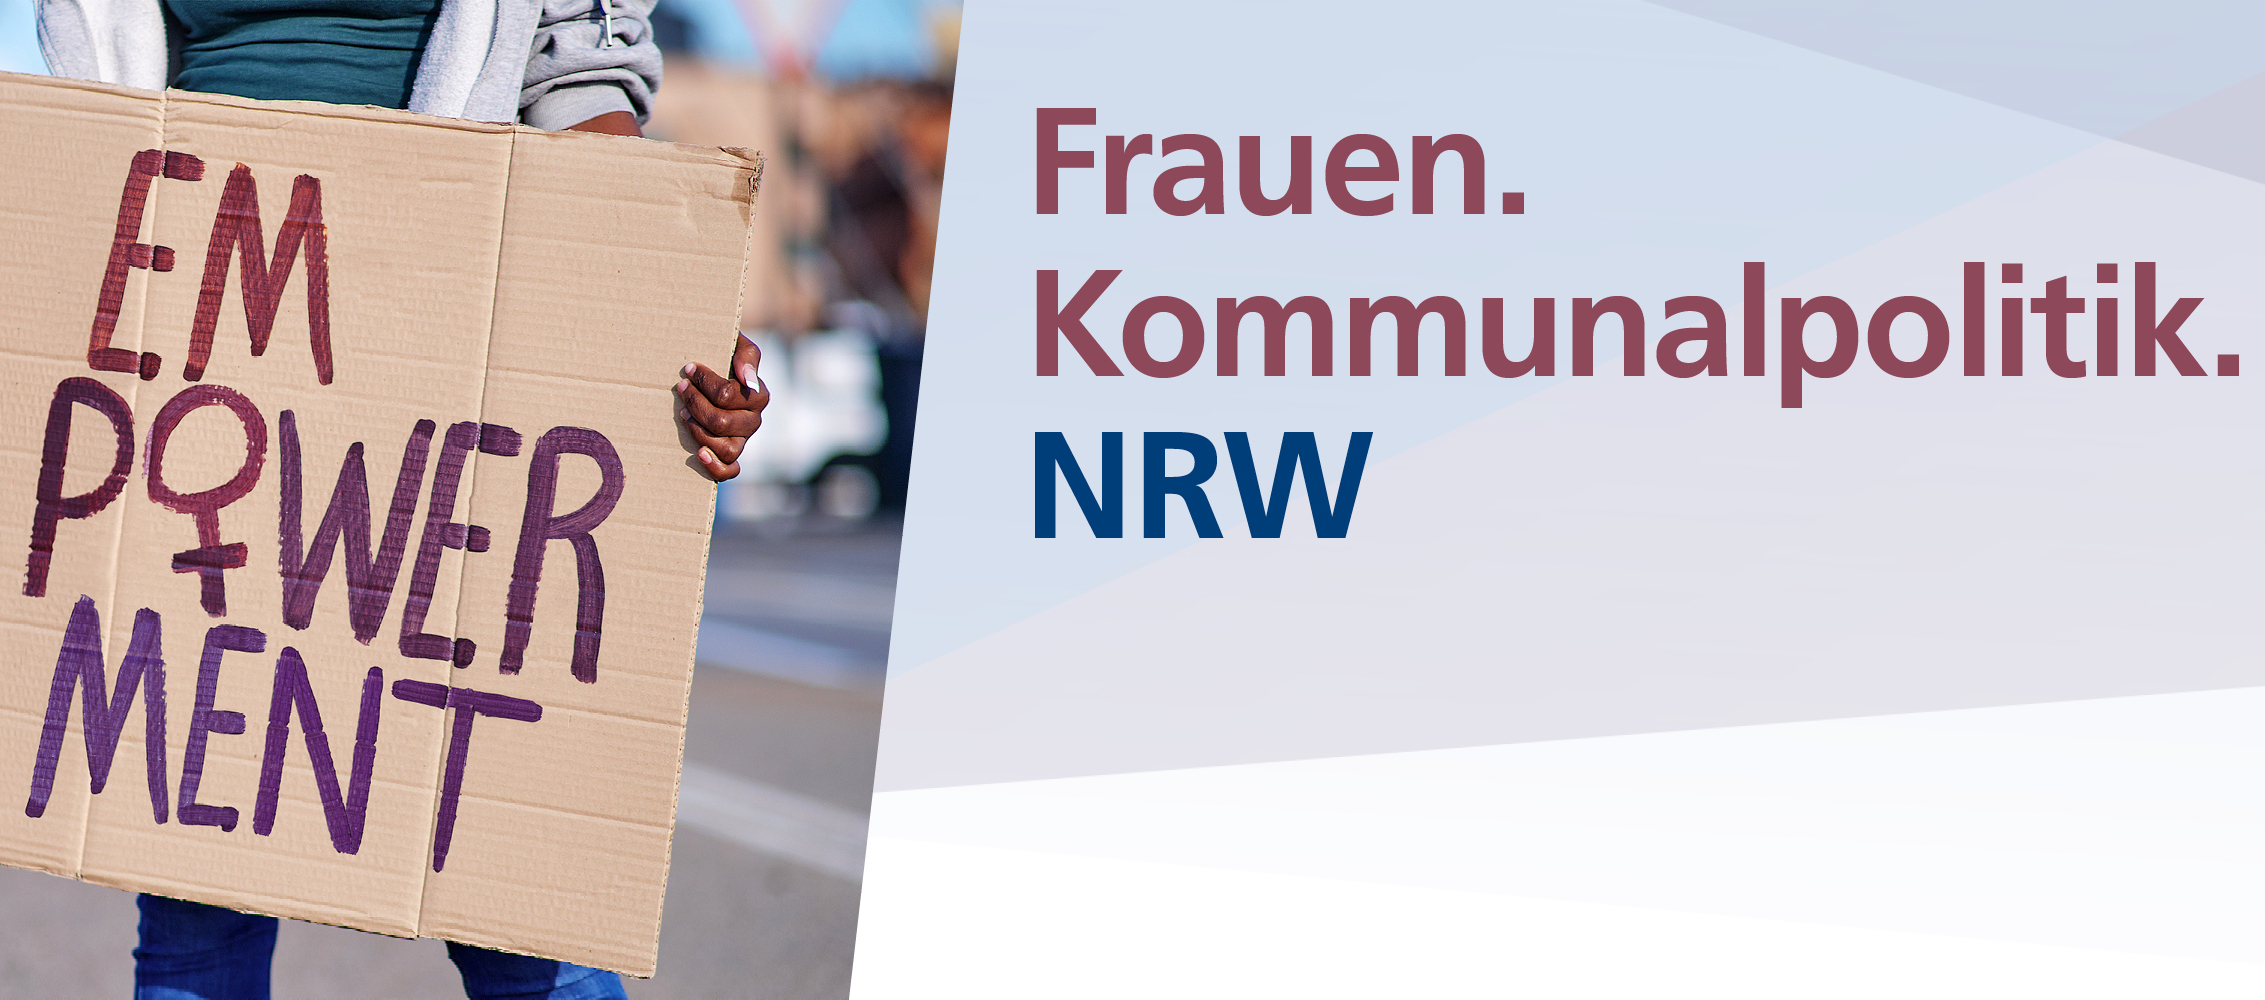 linke Seite zeigt Frau mit Plakat mit Schrift "Empowerment. Rechte Seite zeigt drei Worte: Frauen, Kommunalpolitik, NRW